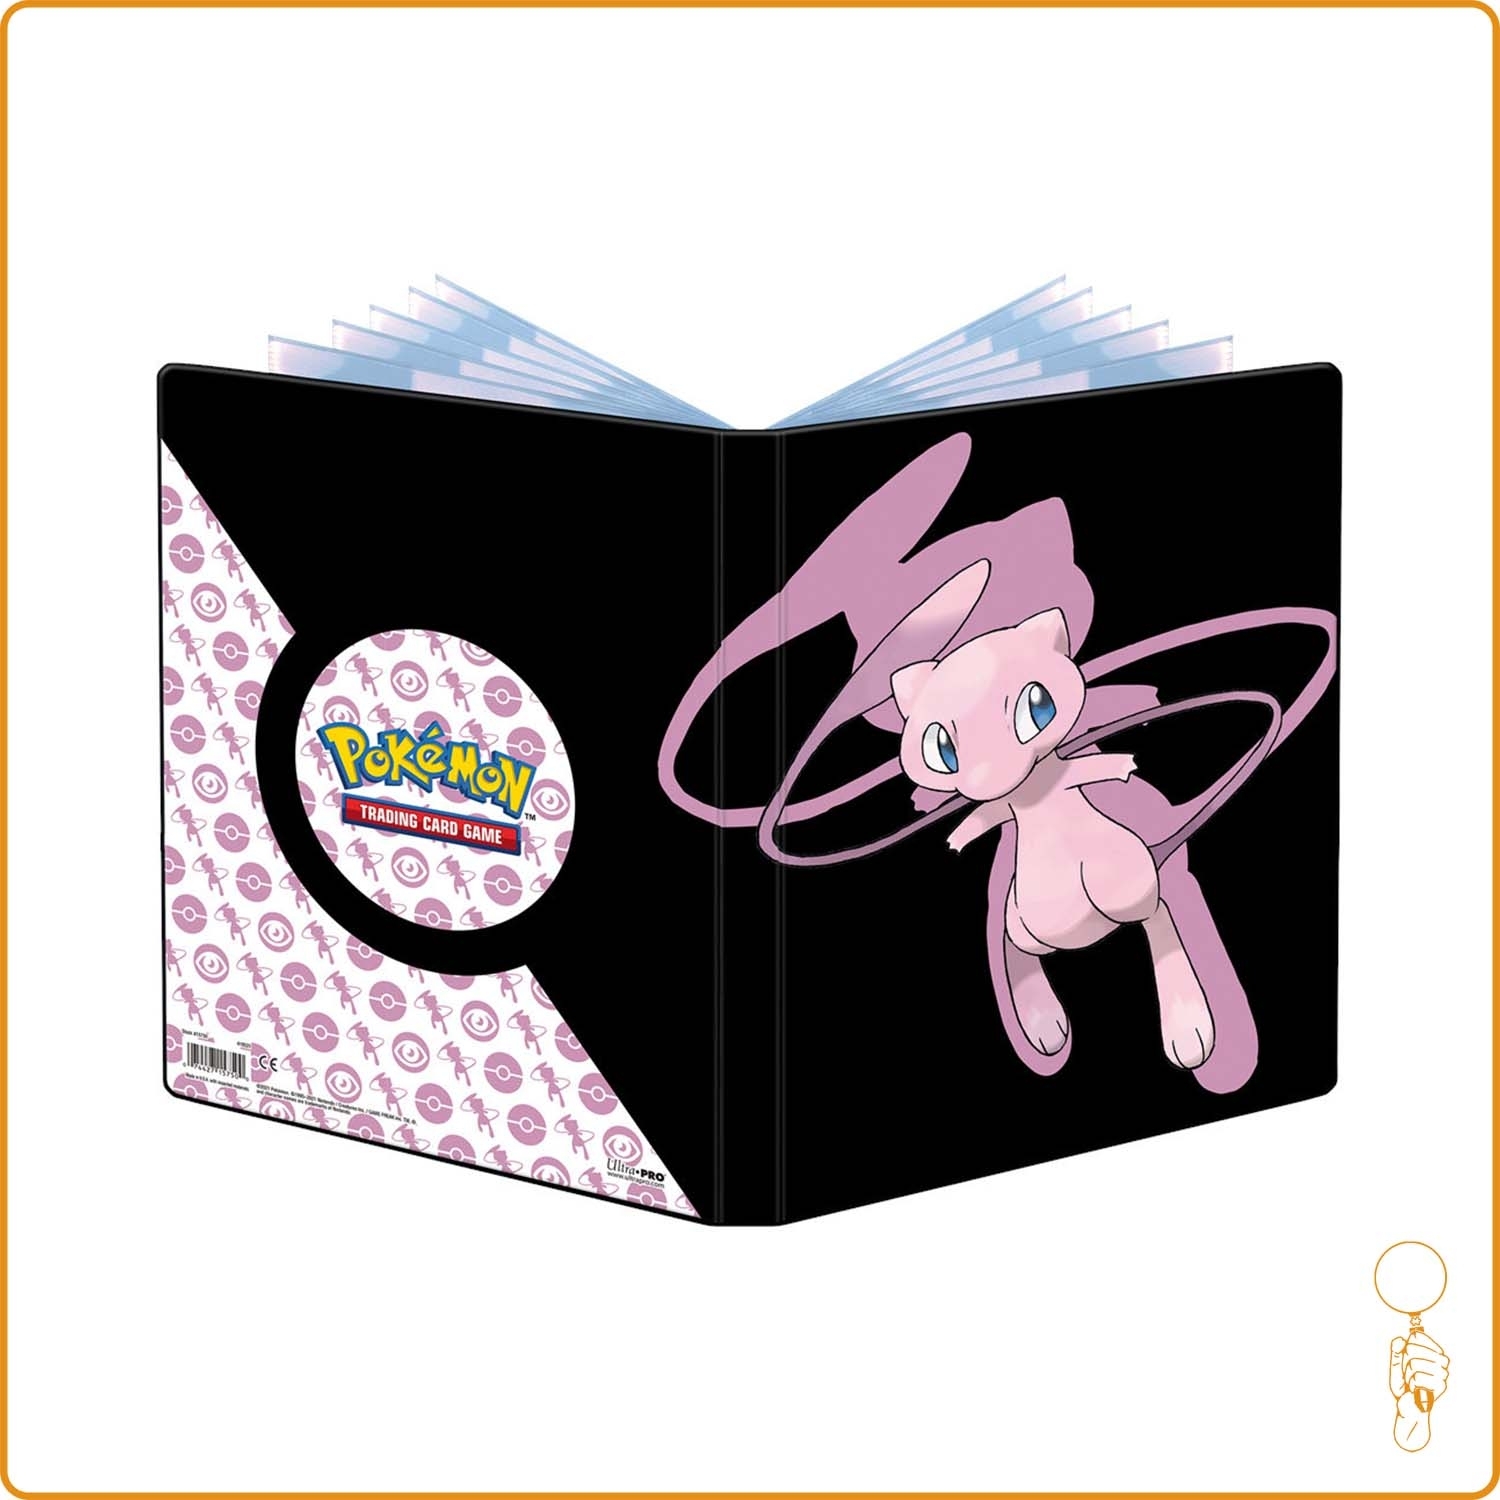 Album photo Pokémon 504782 Officiel: Achetez En ligne en Promo